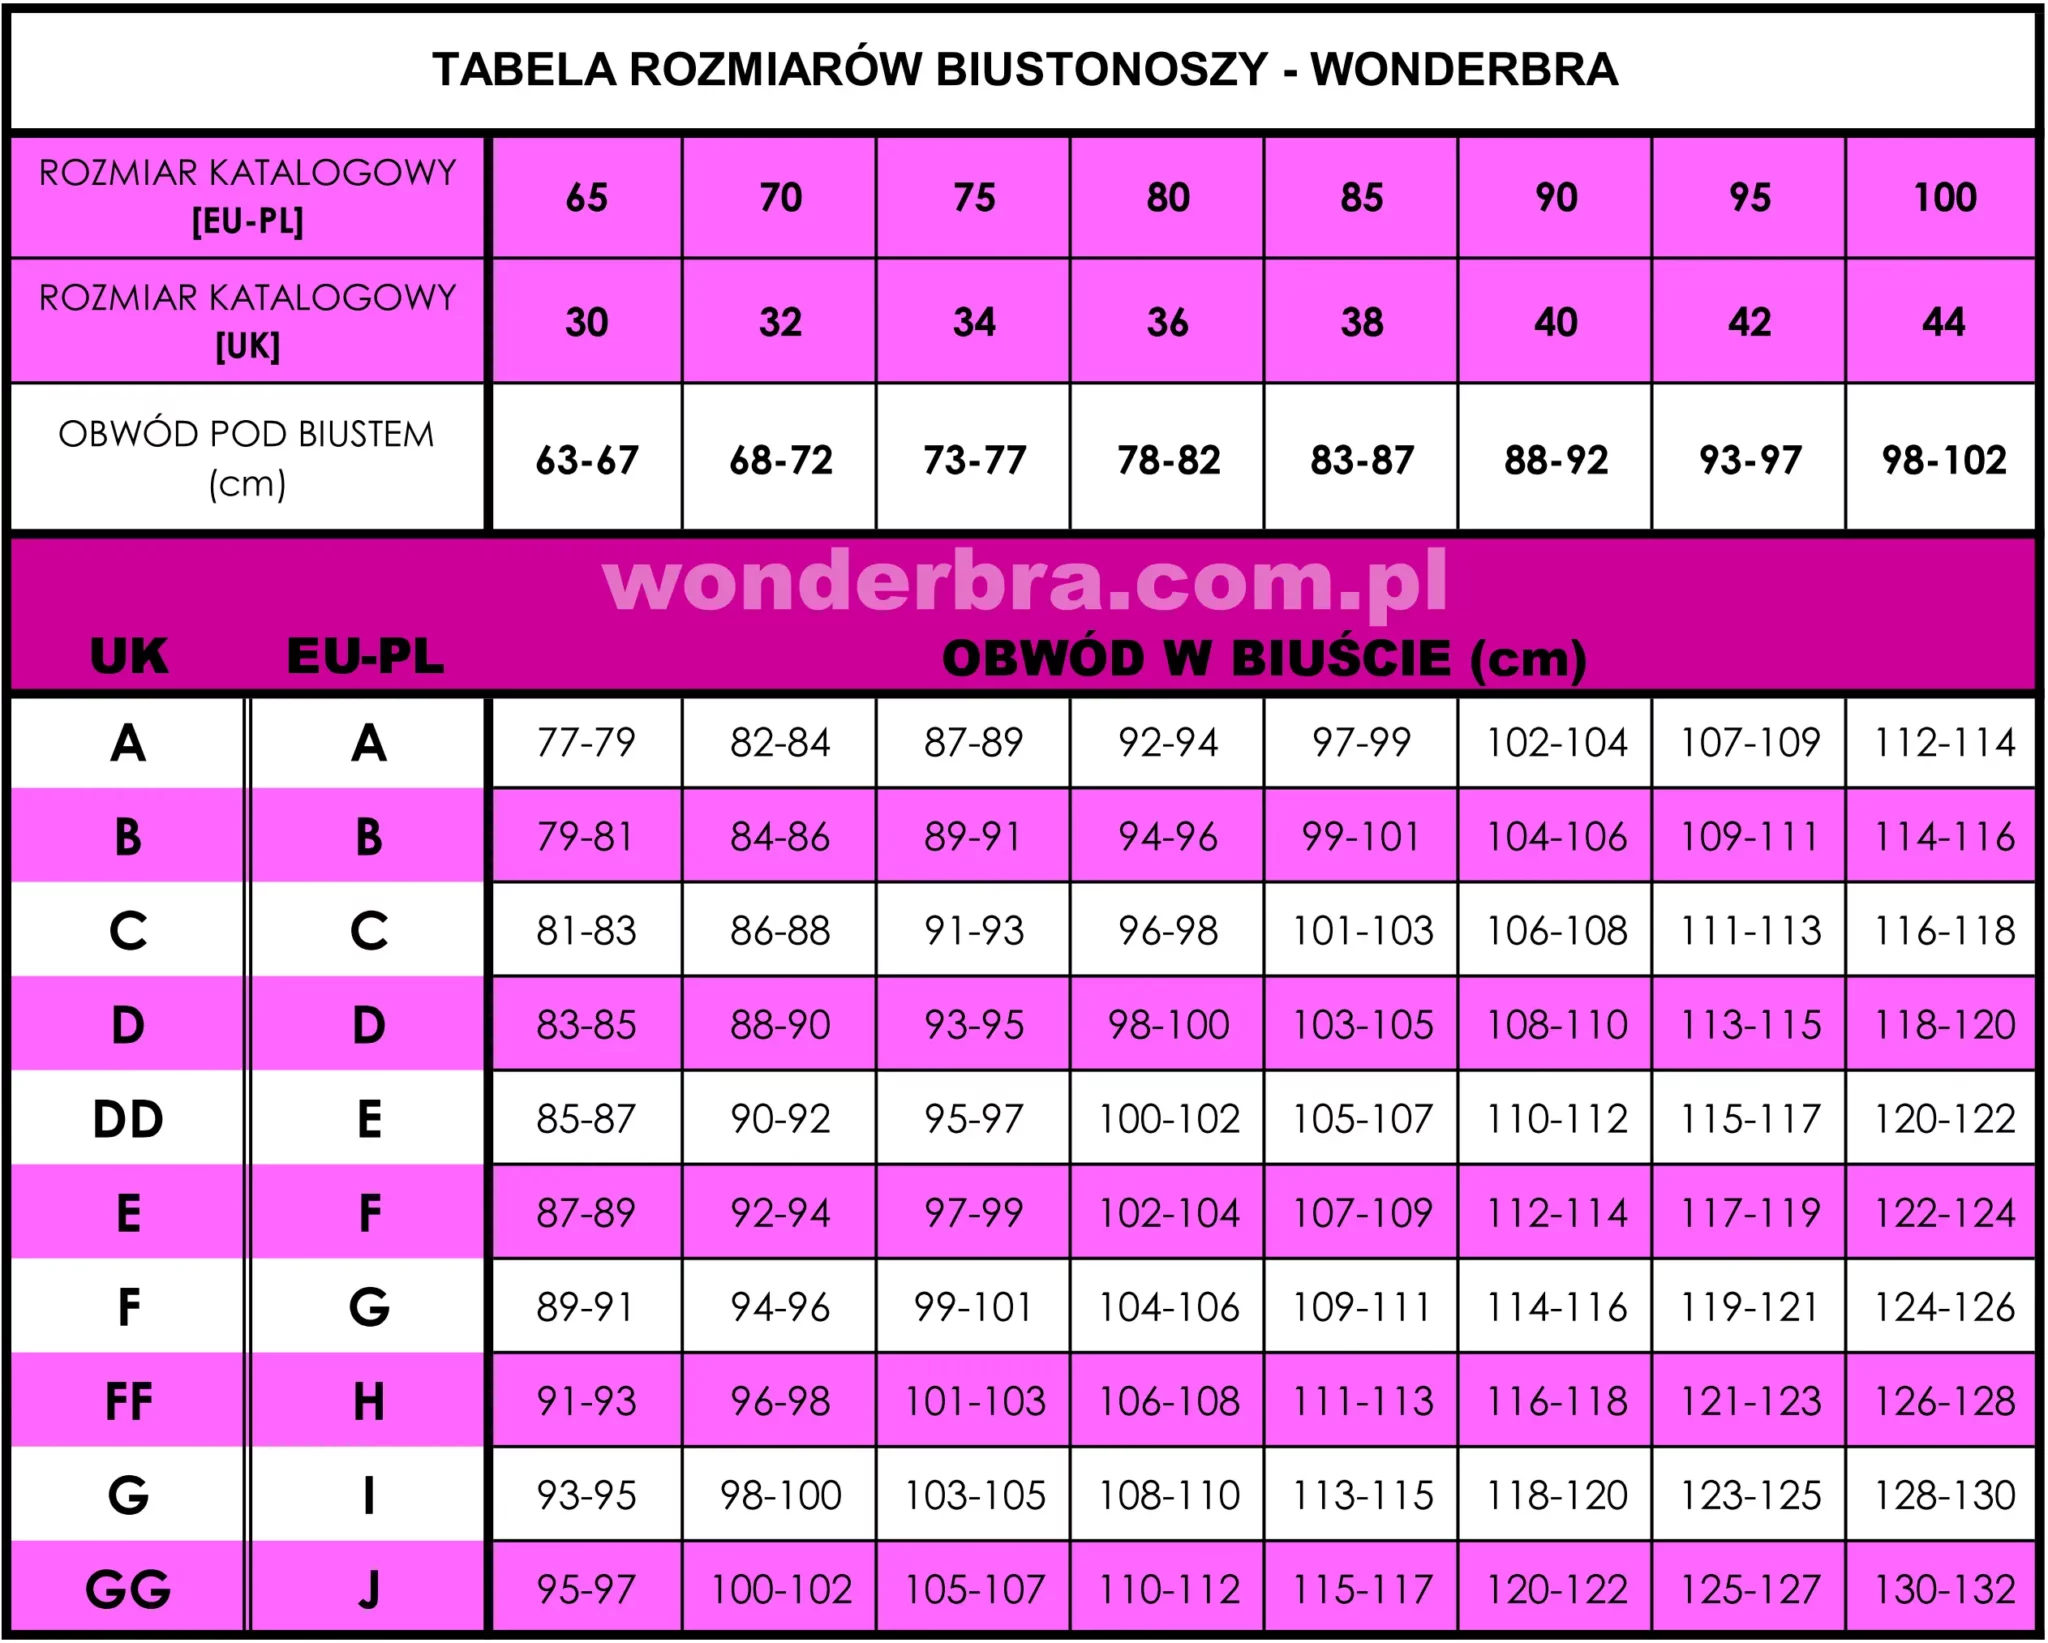 Wonderbra-Tabela-Rozmiarowa